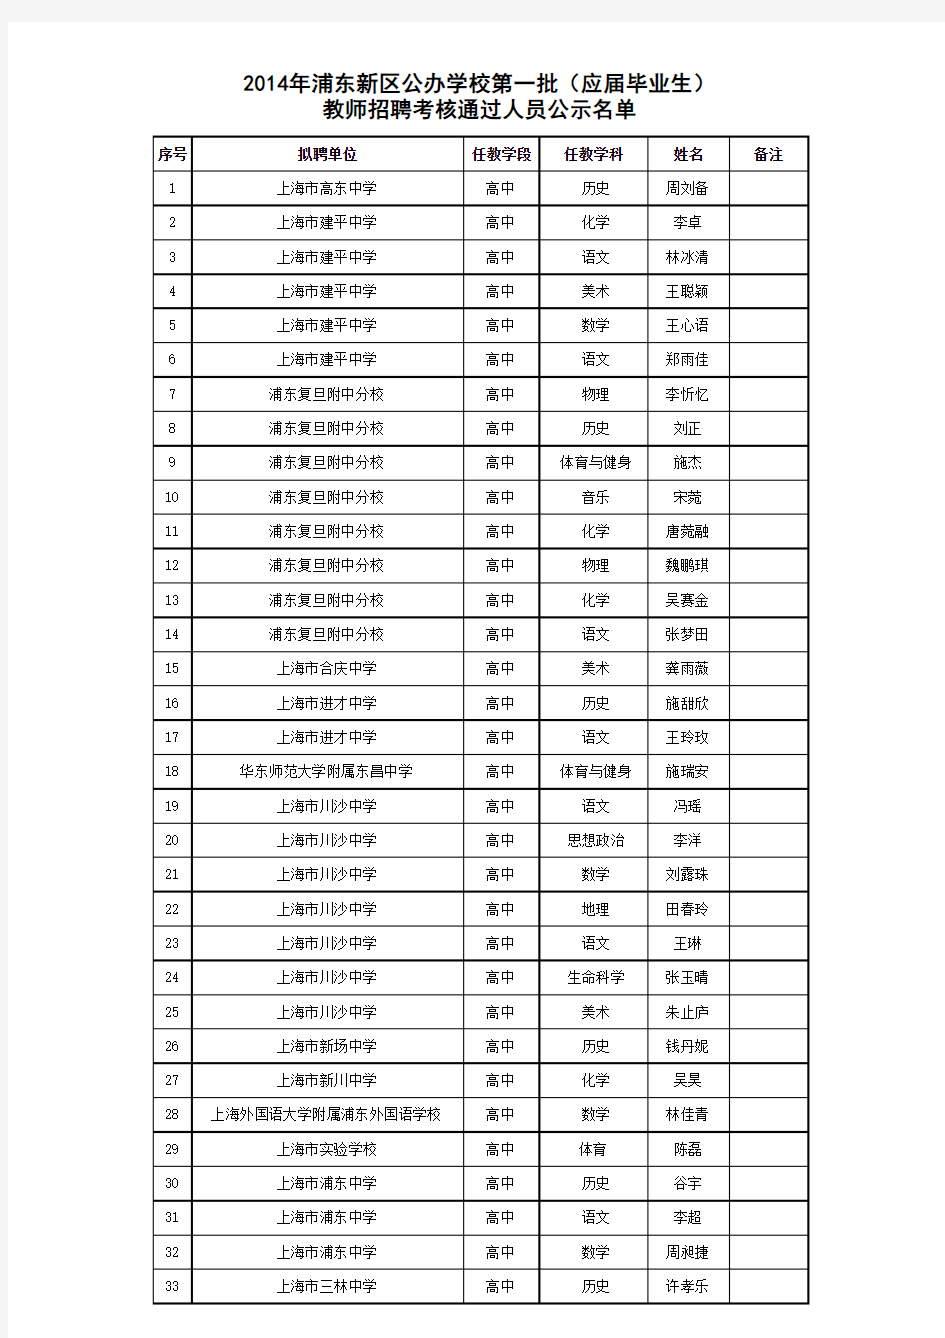 2014年浦东新区公办学校第一批教师招聘考核通过人员名单公示